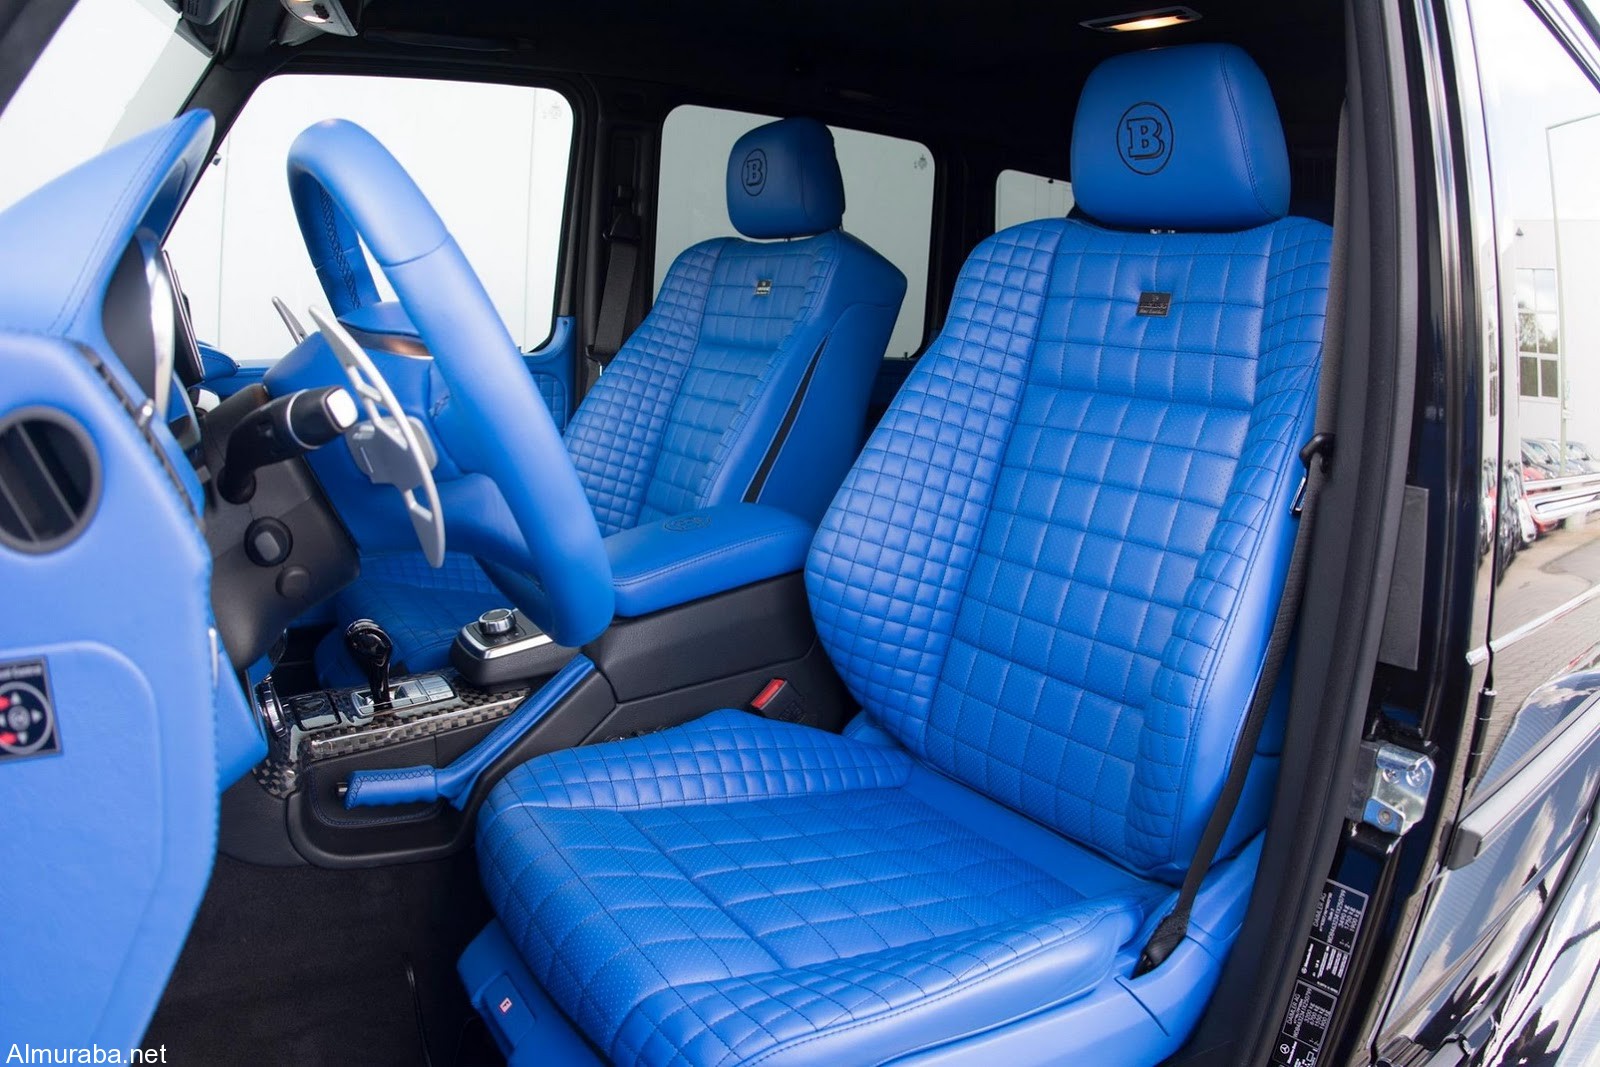 brabus-500-4x4-blue-interior-18